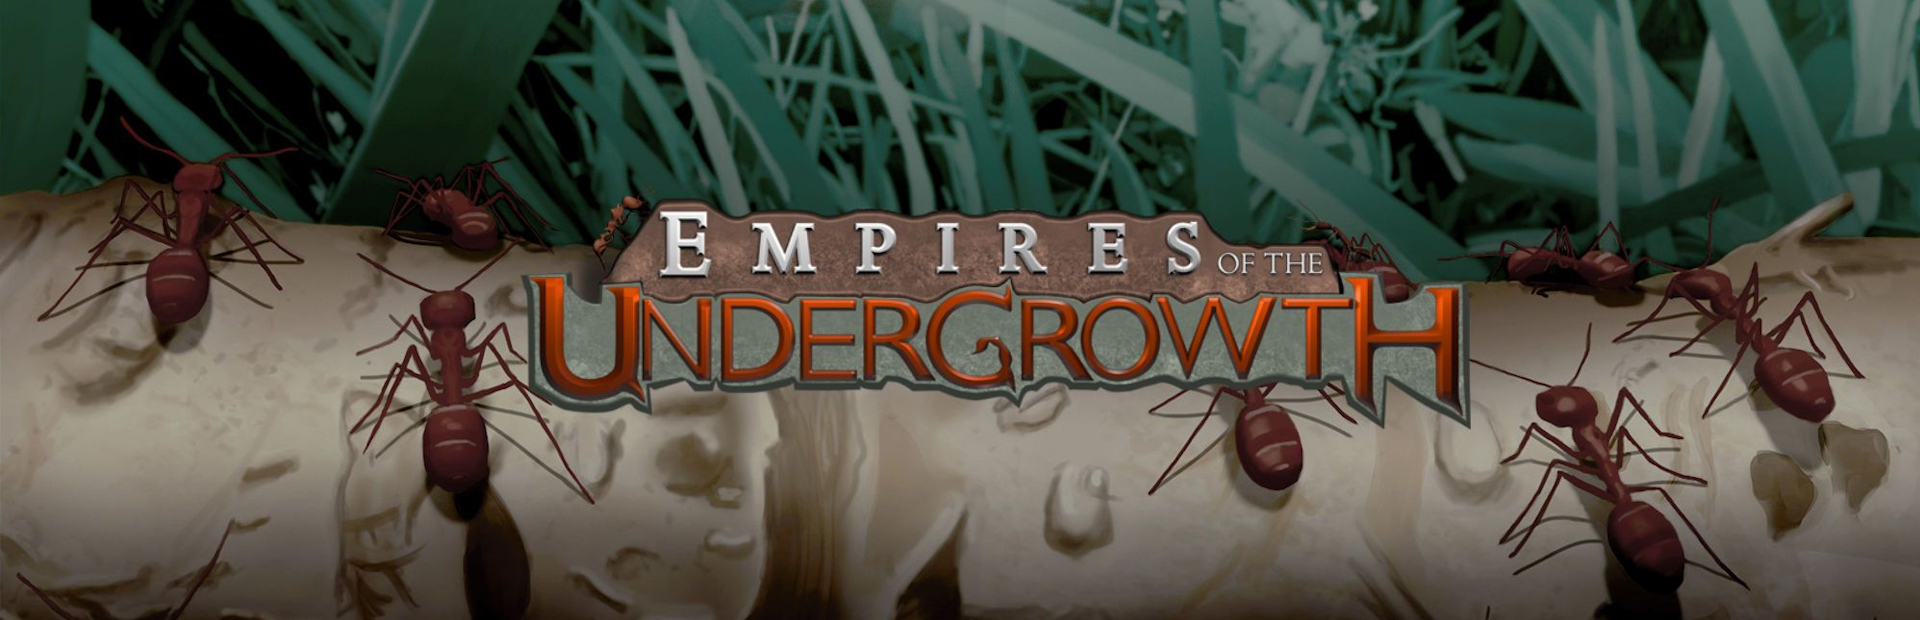 دانلود بازی Empires of the Undergrowth برای پی سی | گیمباتو